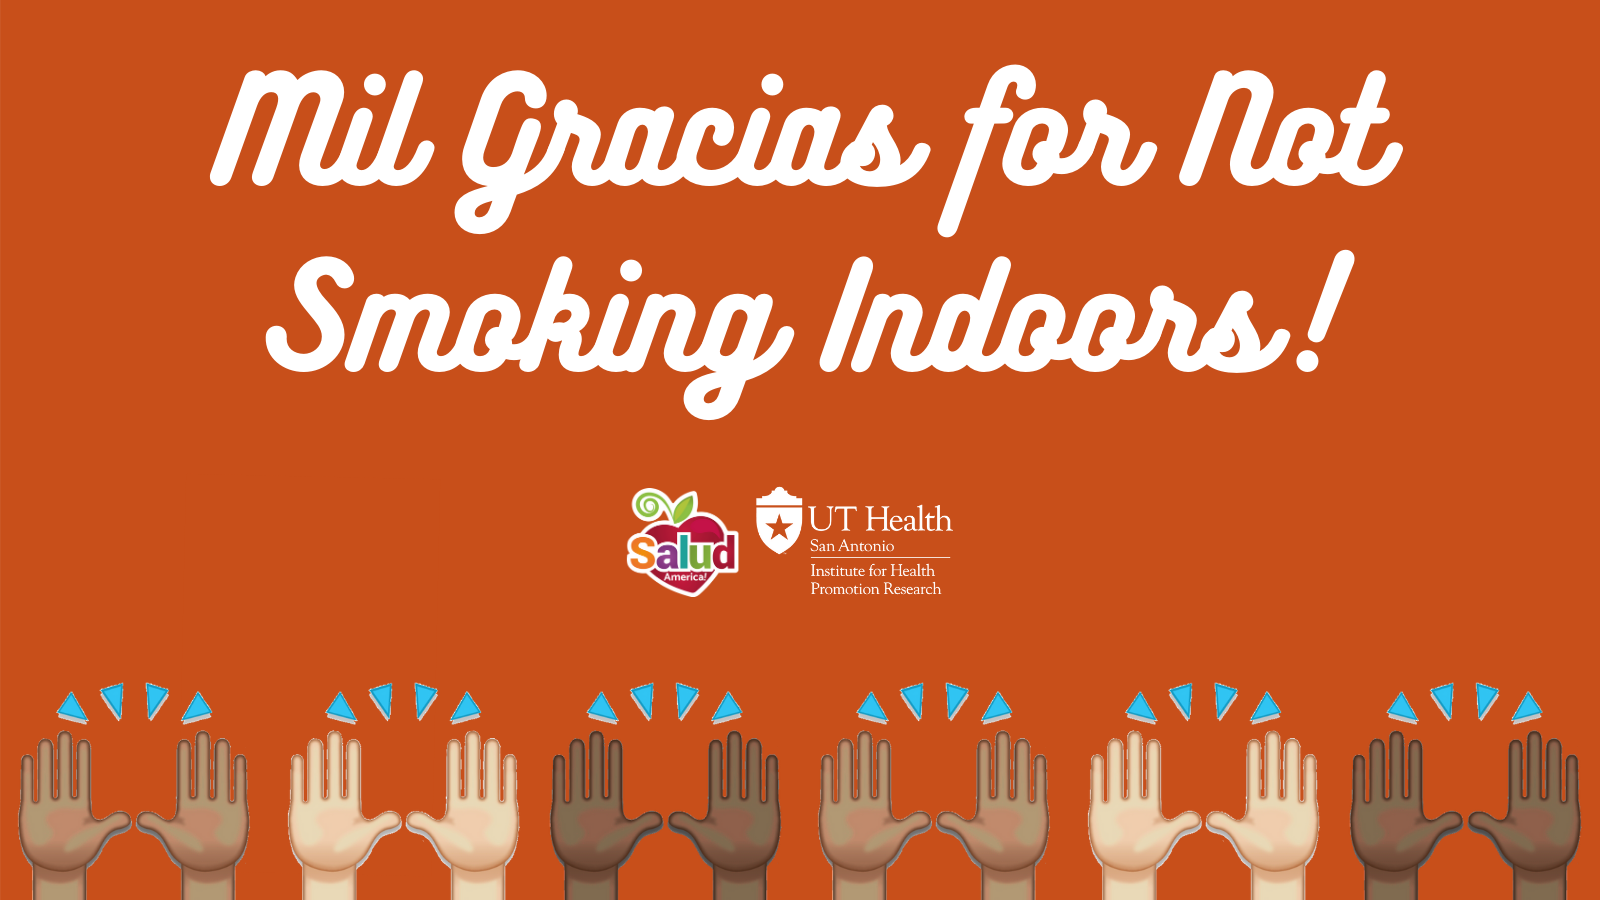 mil gracias for not smoking indoors logo